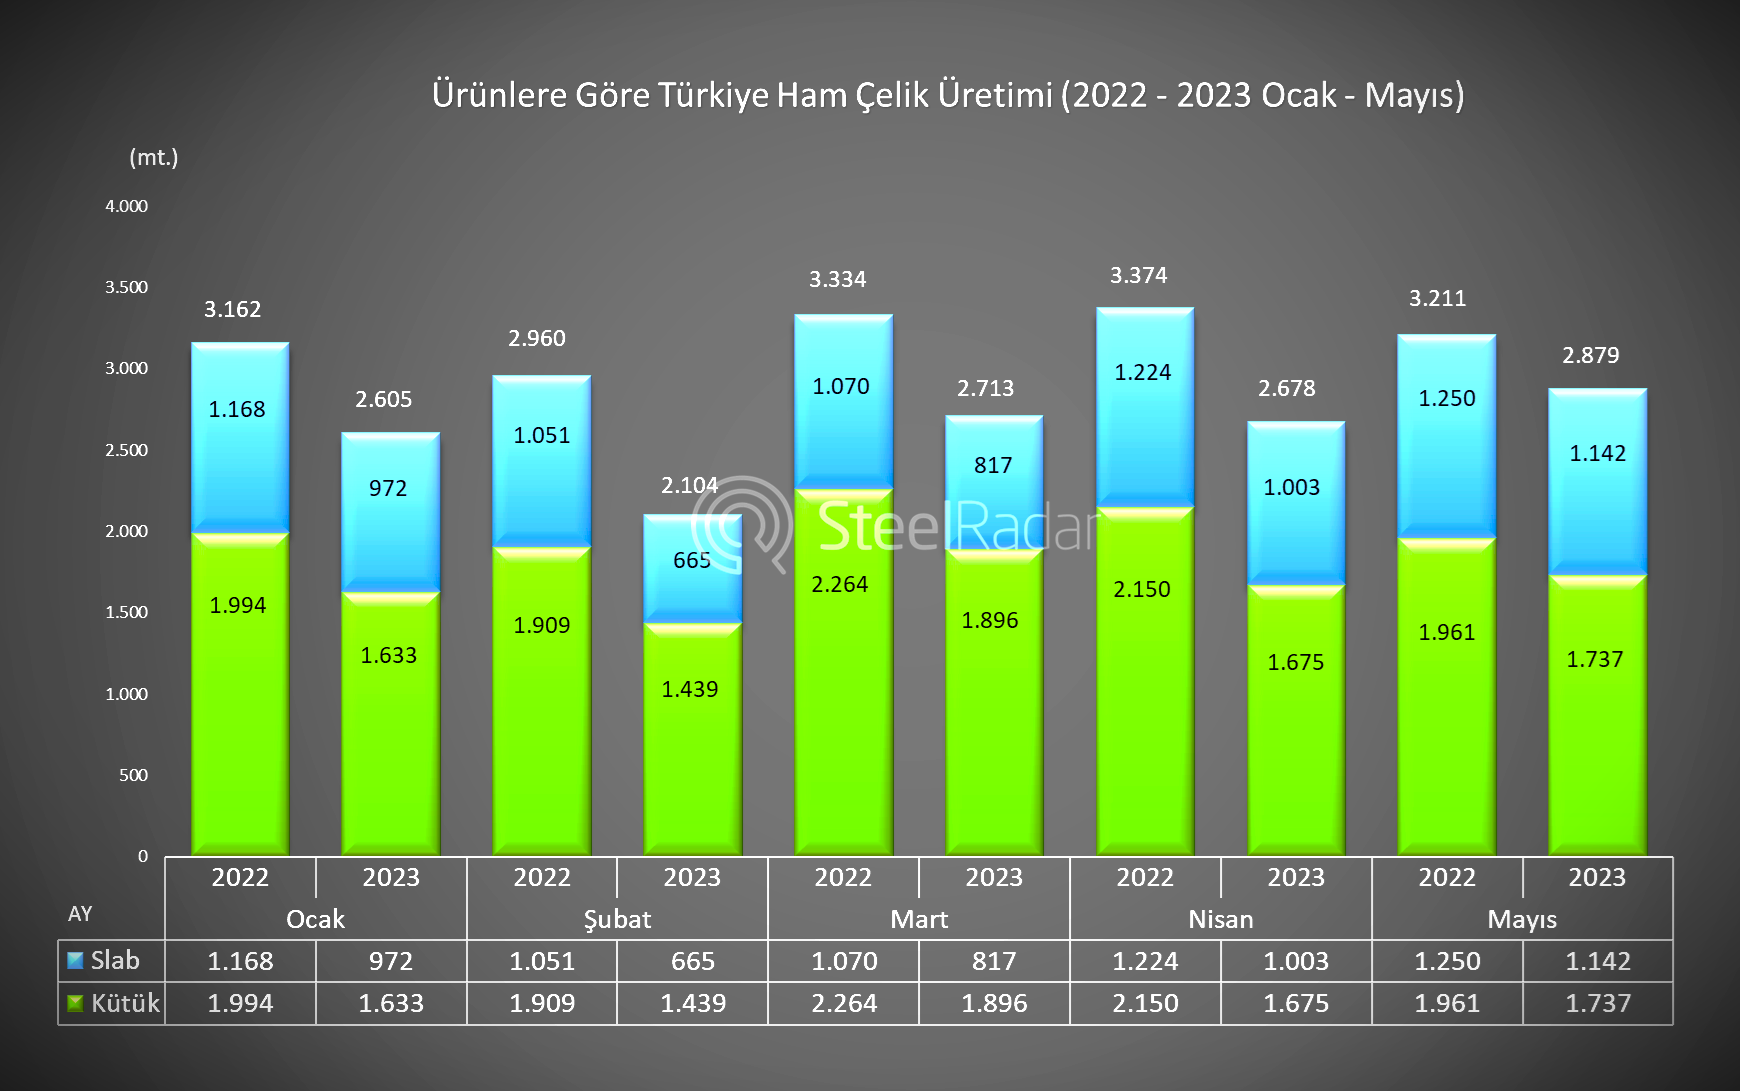 Ocak - Mayıs döneminde Türkiye'nin ürünlere göre (kütük ve slab) ham çelik üretimi %19 azaldı